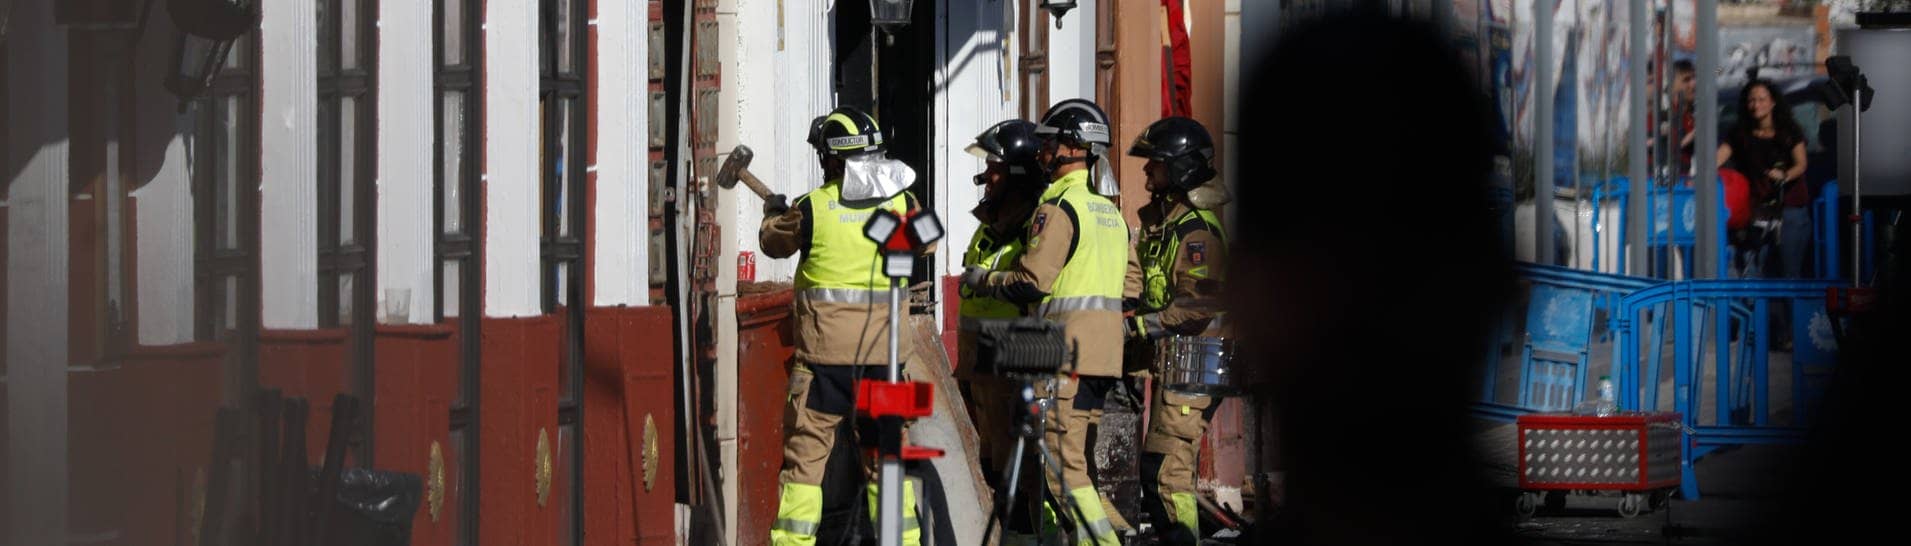 Feuerwehrleute arbeiten in einer der von einem Brand betroffenen Diskotheken in Murcia.  (Foto: dpa Bildfunk, picture alliance/dpa/EUROPA PRESS | Edu Botella)